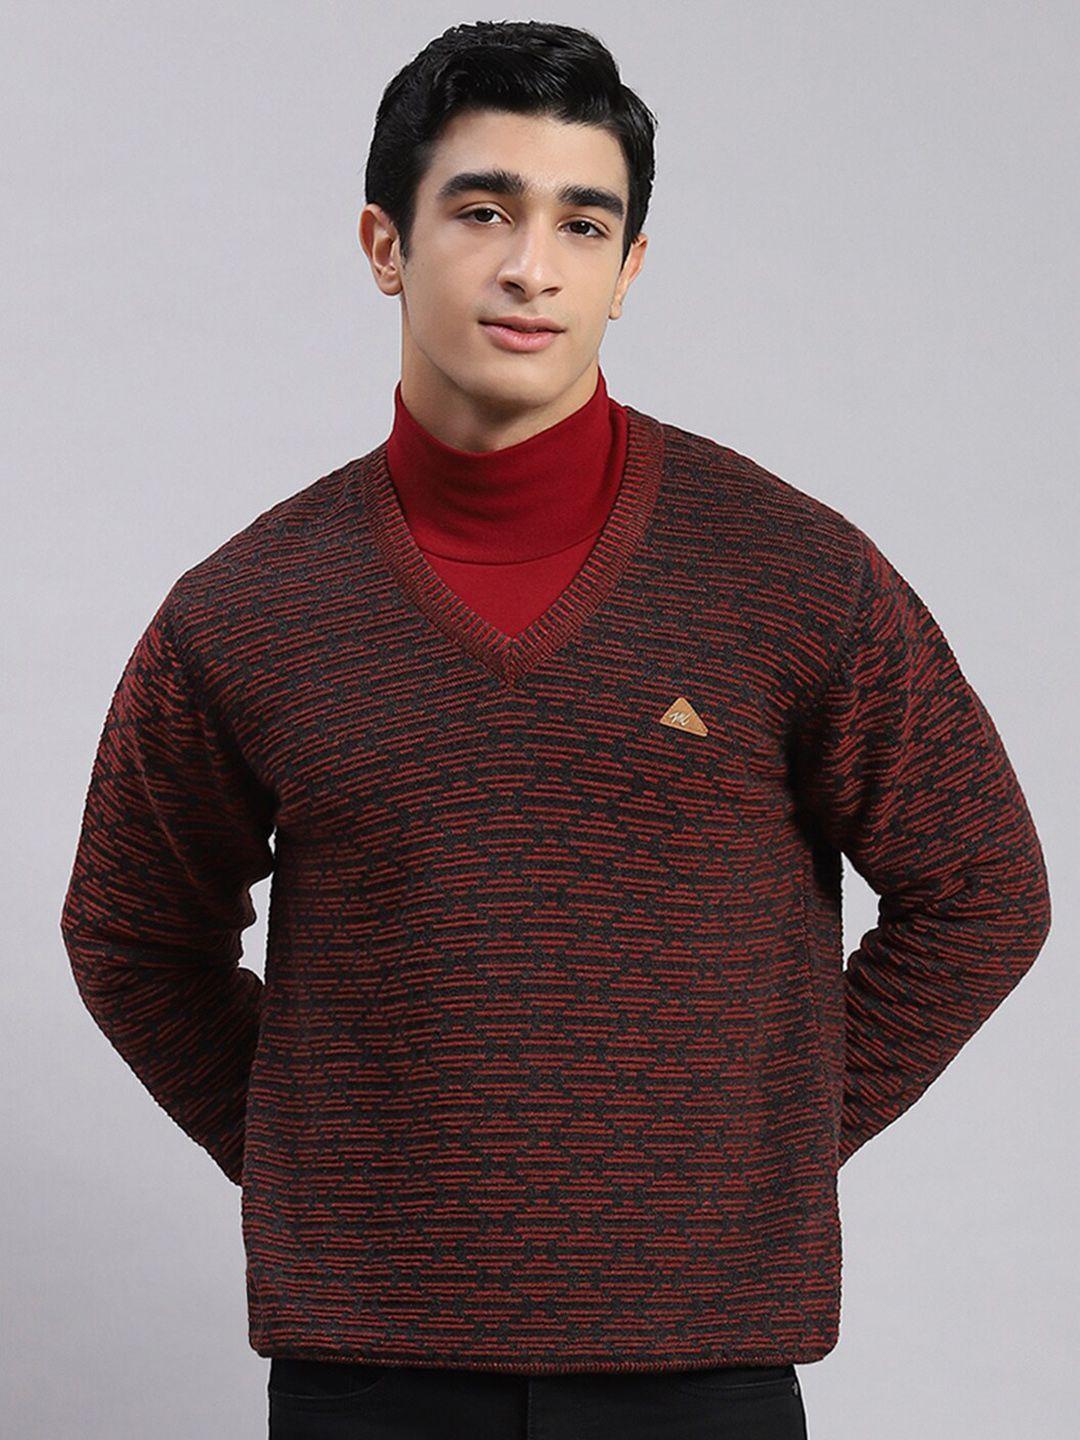 monte carlo v- neck geometric self design pure woollen pullover